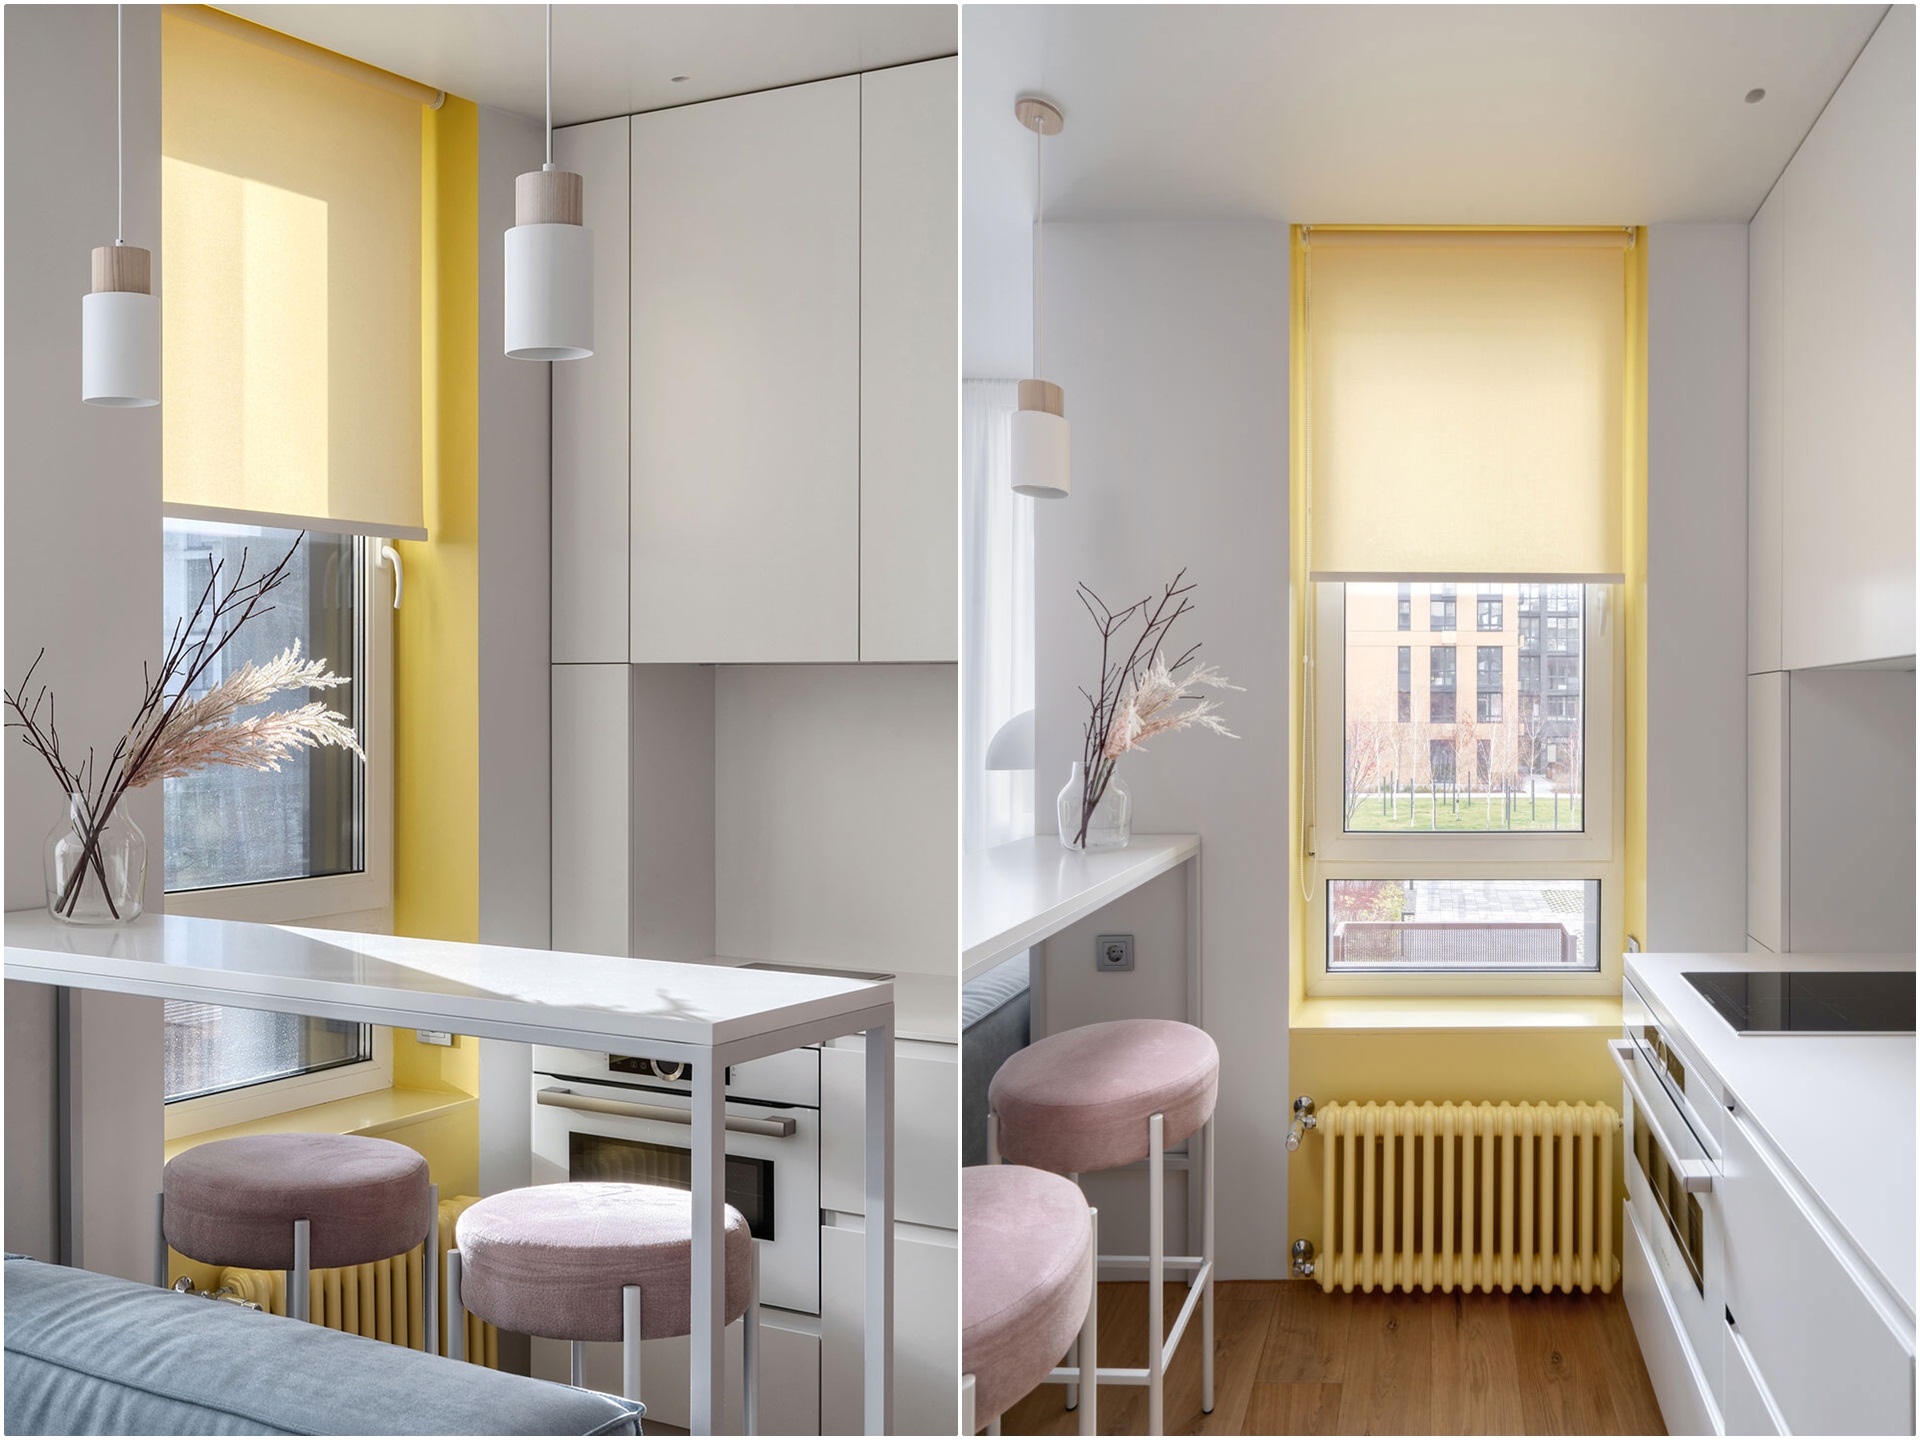 Không gian “ngọt như kẹo” bên trong căn hộ 32m² sử dụng hồng, xanh, vàng làm điểm nhấn - Ảnh 3.